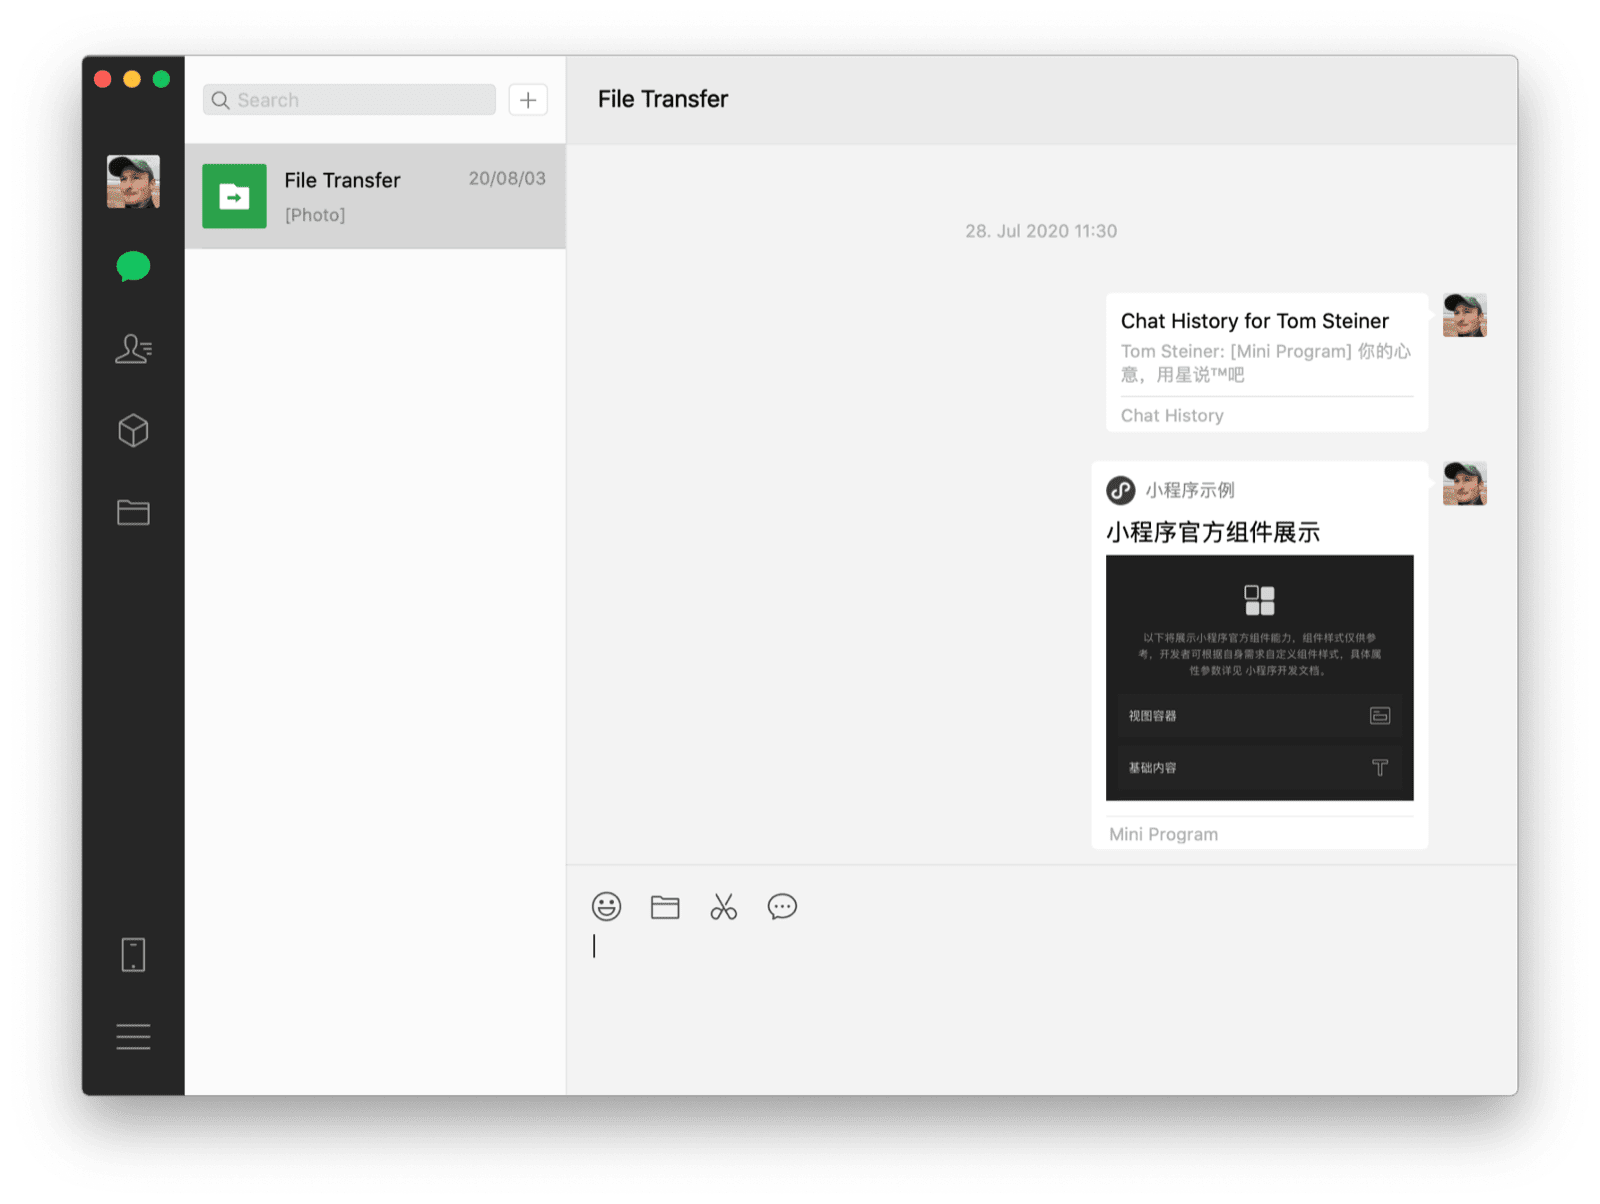 برنامج WeChat macOS المتوافق مع أجهزة الكمبيوتر المكتبي يعرض محادثة مع شخص باستخدام تطبيق صغير مشترك وسجلّ محادثات كرسالتَين مرئيتَين.